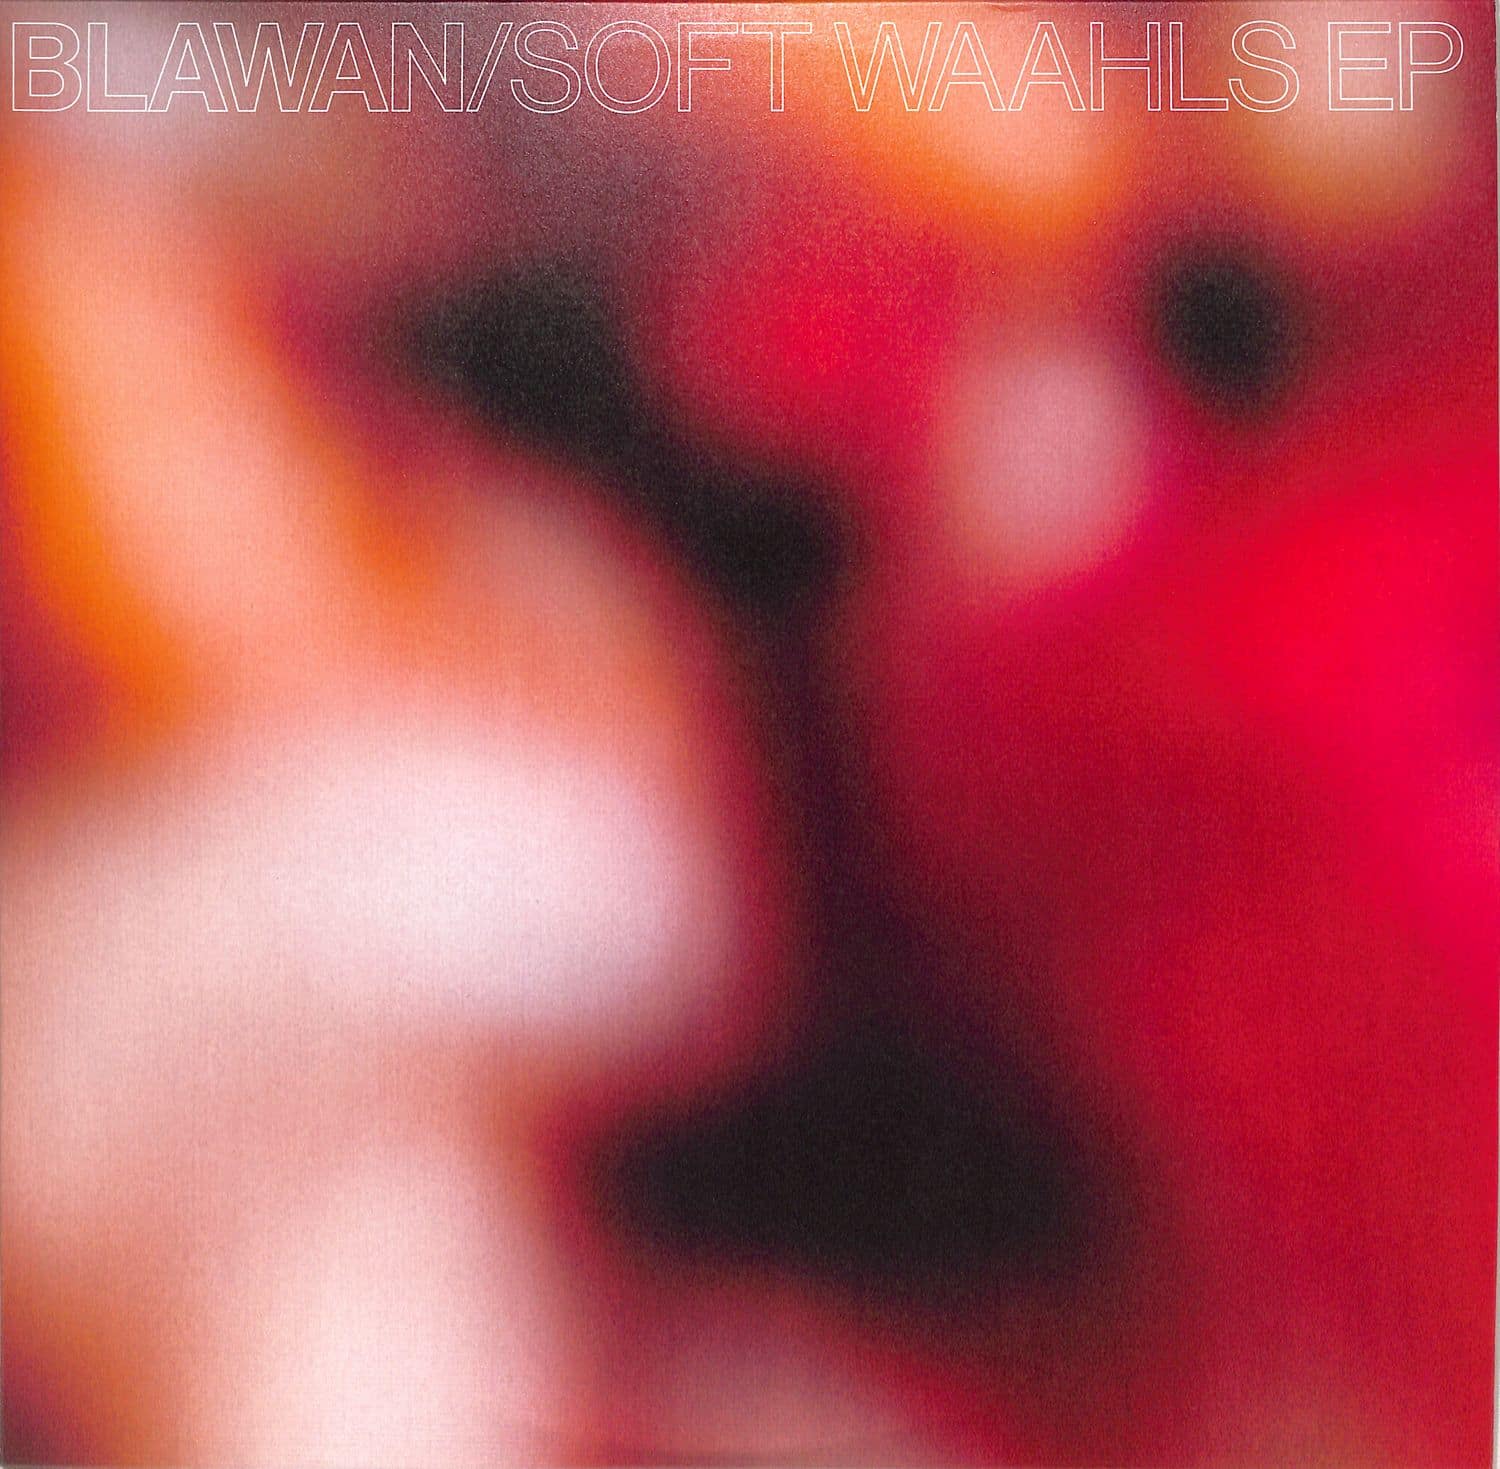 Blawan - SOFT WAAHLS EP 